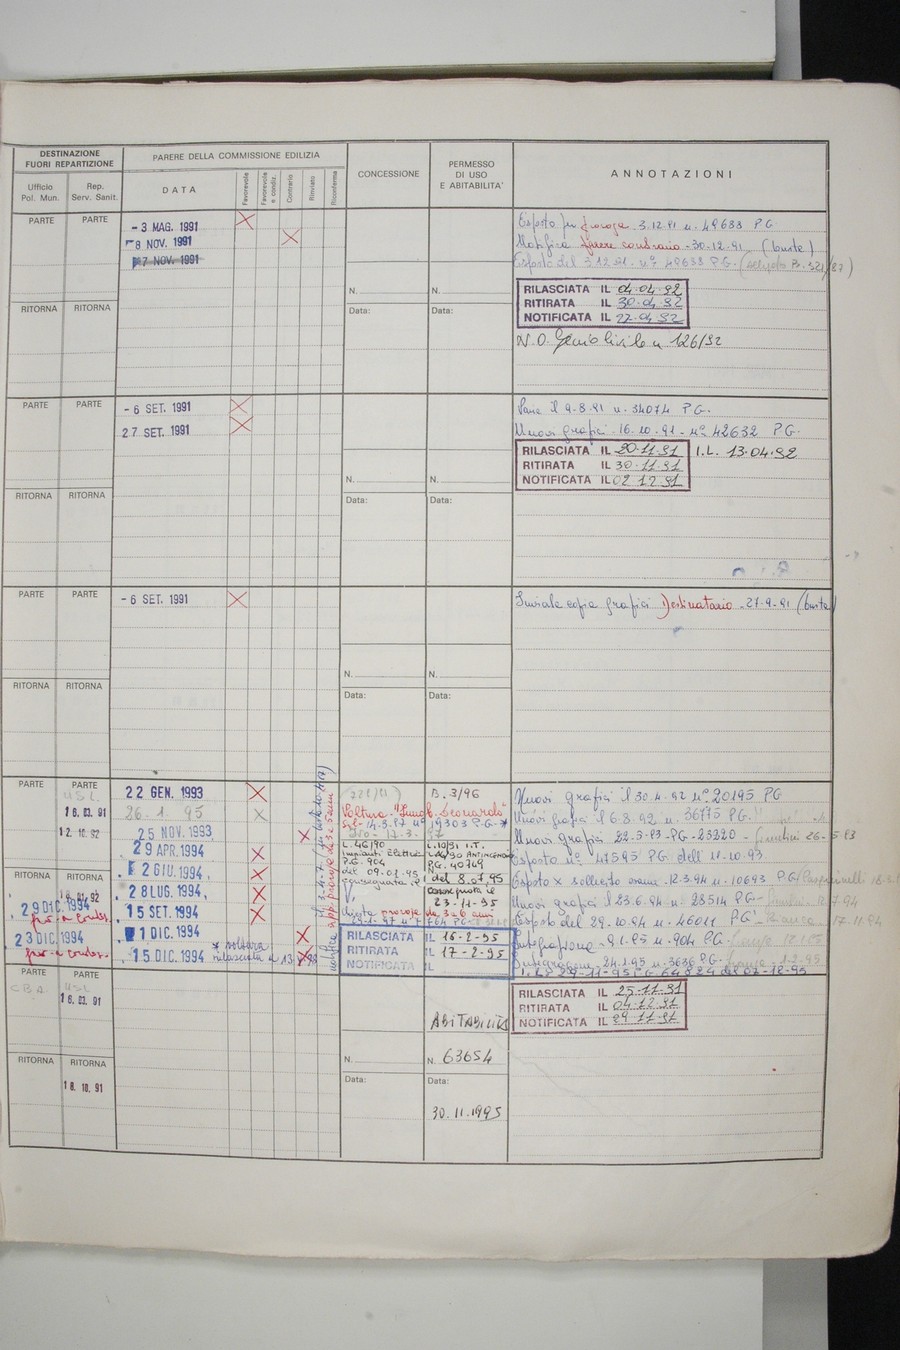 Foto del lato destro del registro con i dati della pratica 109/1991